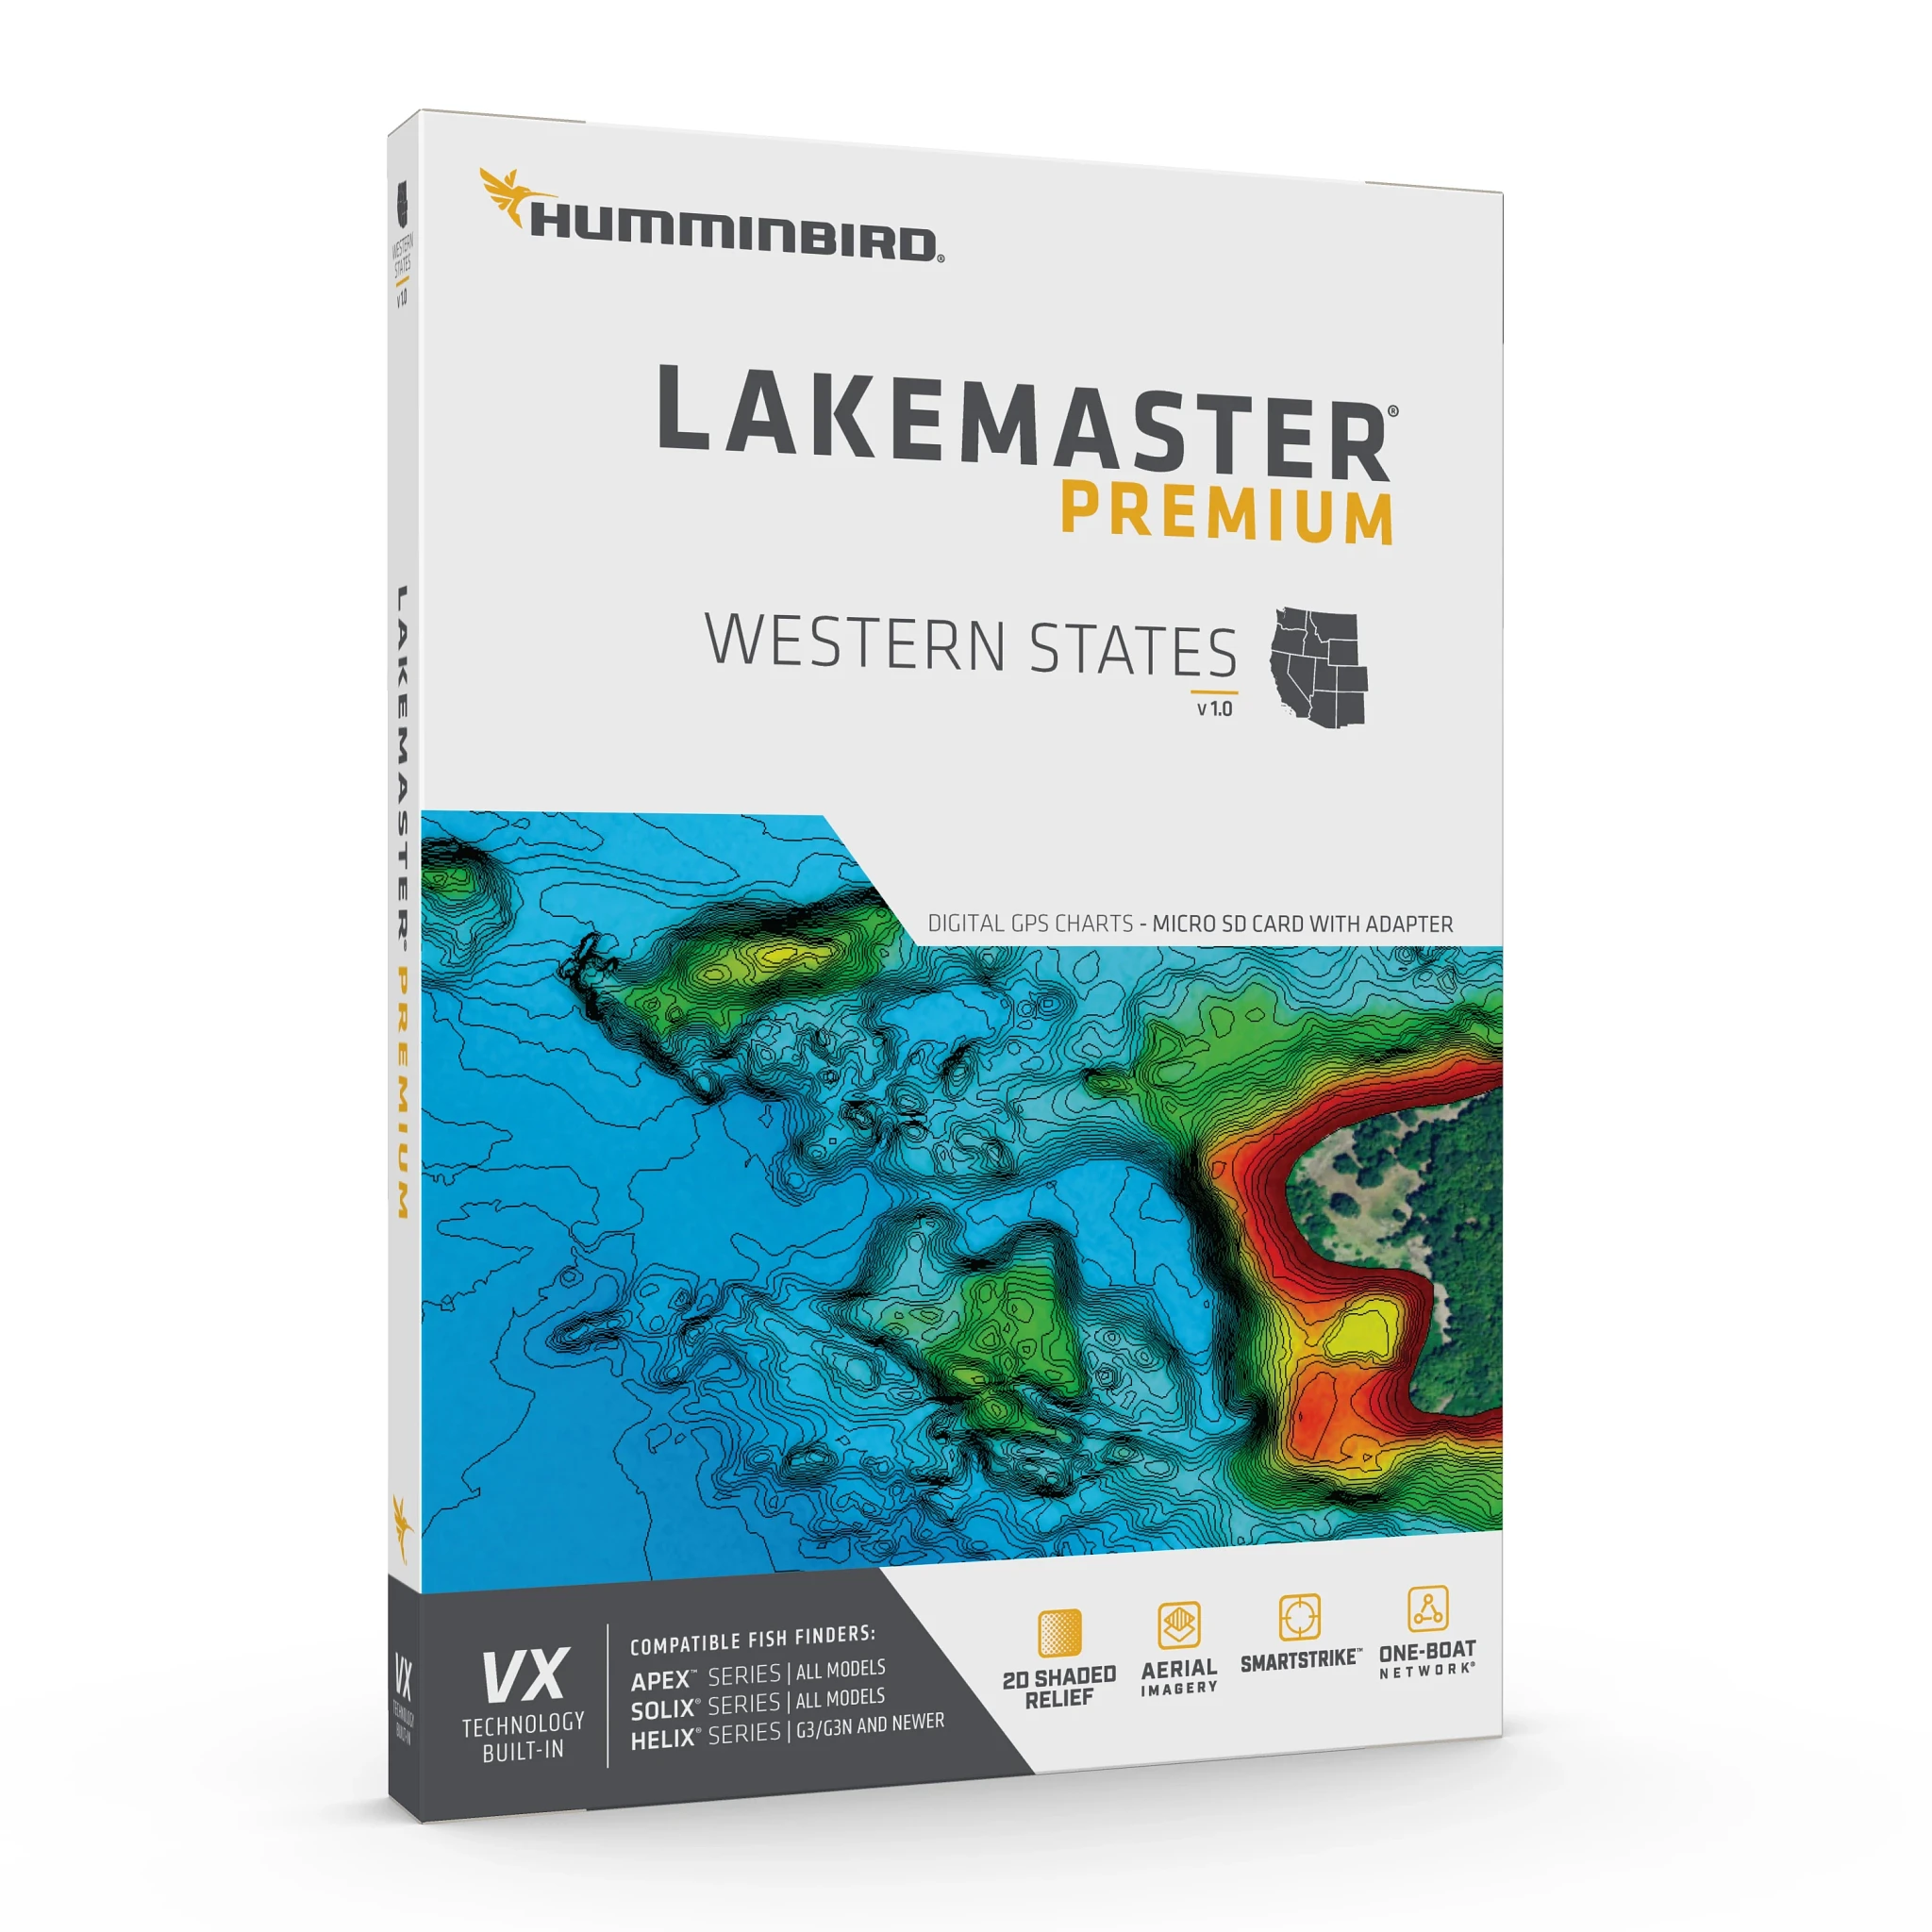 LakeMaster Premium - Western States Packaging